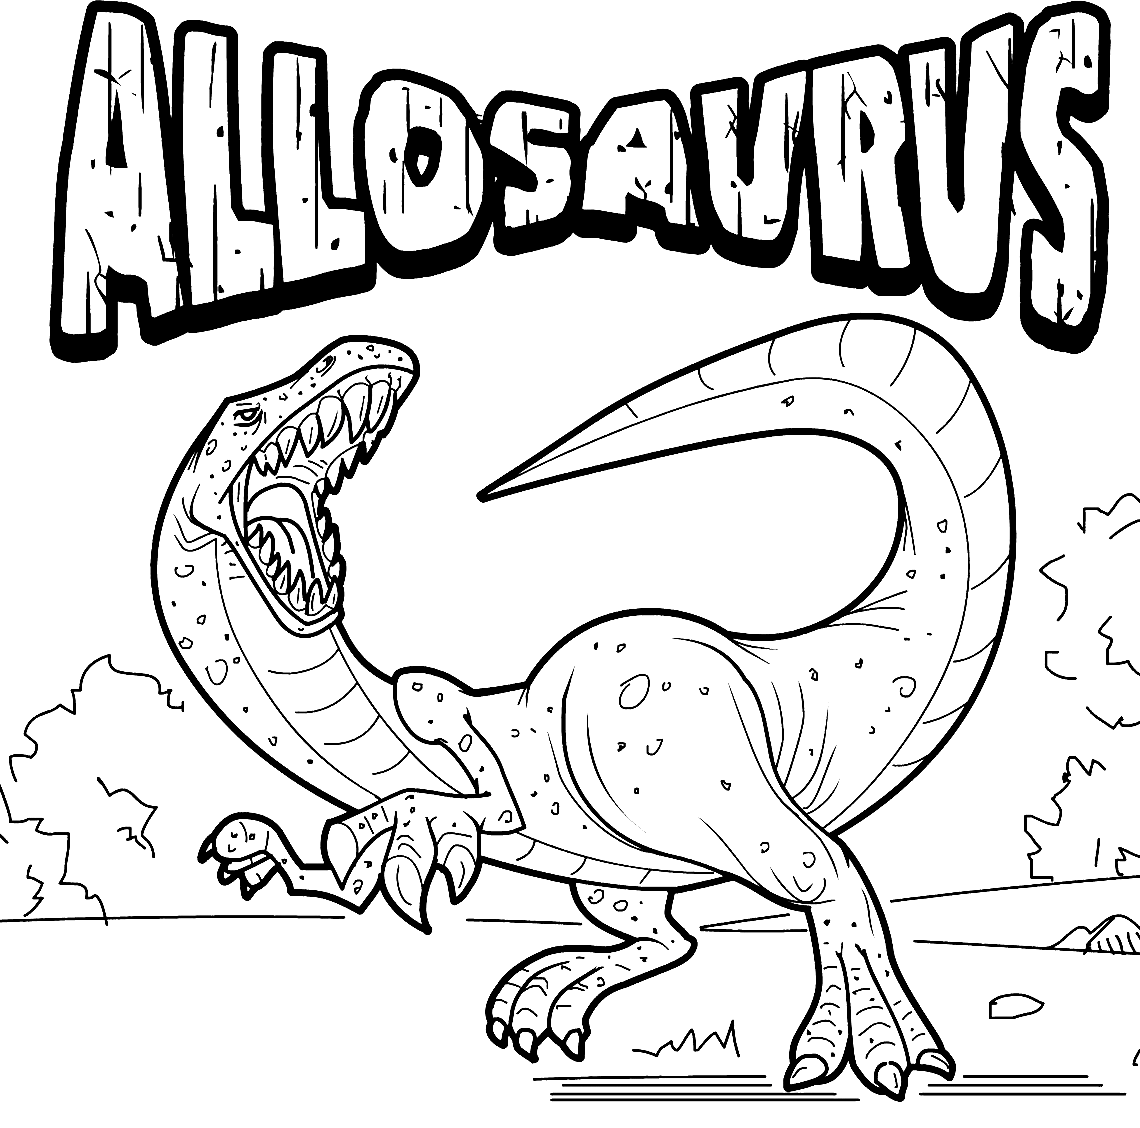 Allosaurus dinosaurus 1 kleurplaat